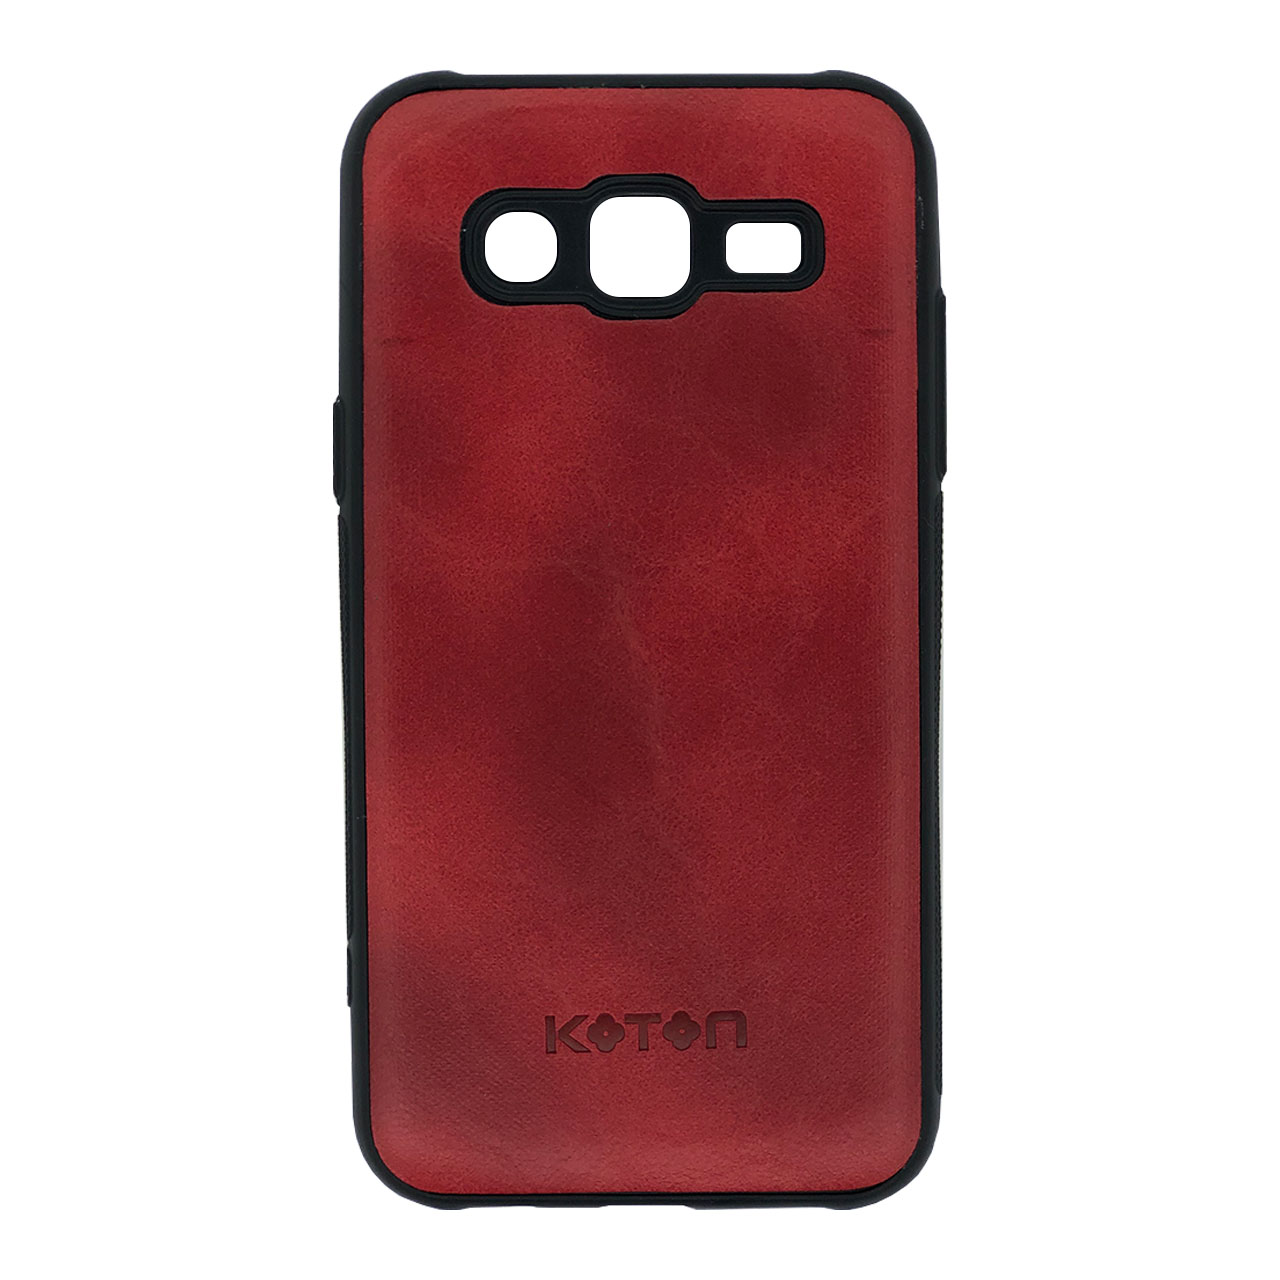 کاور کوتون مدل K-25 مناسب برای گوشی موبایل سامسونگ Galaxy J5 2015